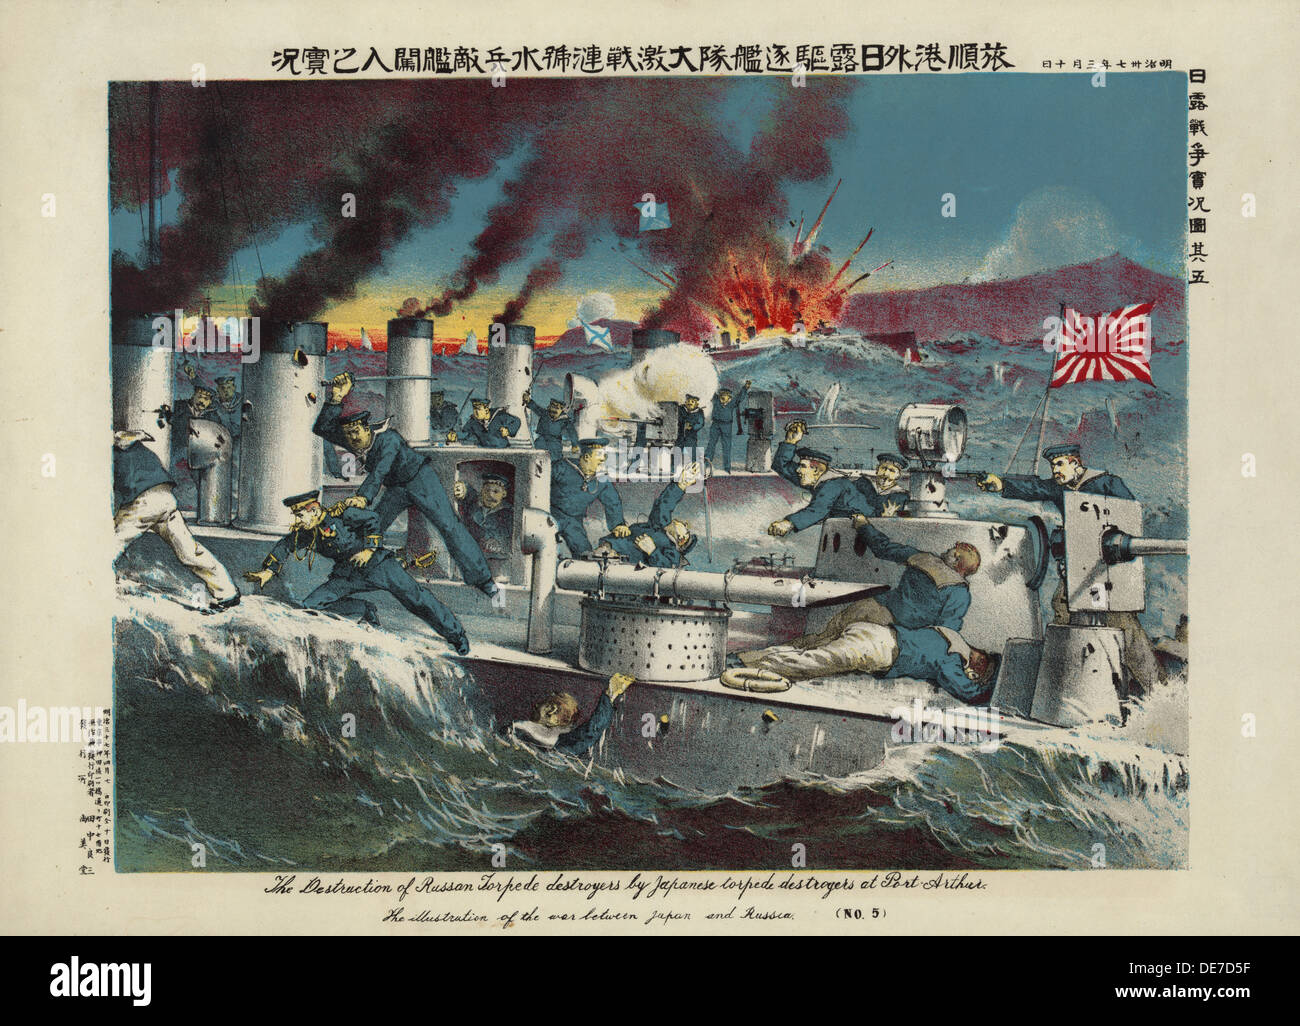 La destruction des destroyers torpilleurs russes par les destroyers japonais à Port Arthur, 1904. Artiste : Tanaka, Ryozo (actif au début du xxe cen.) Banque D'Images